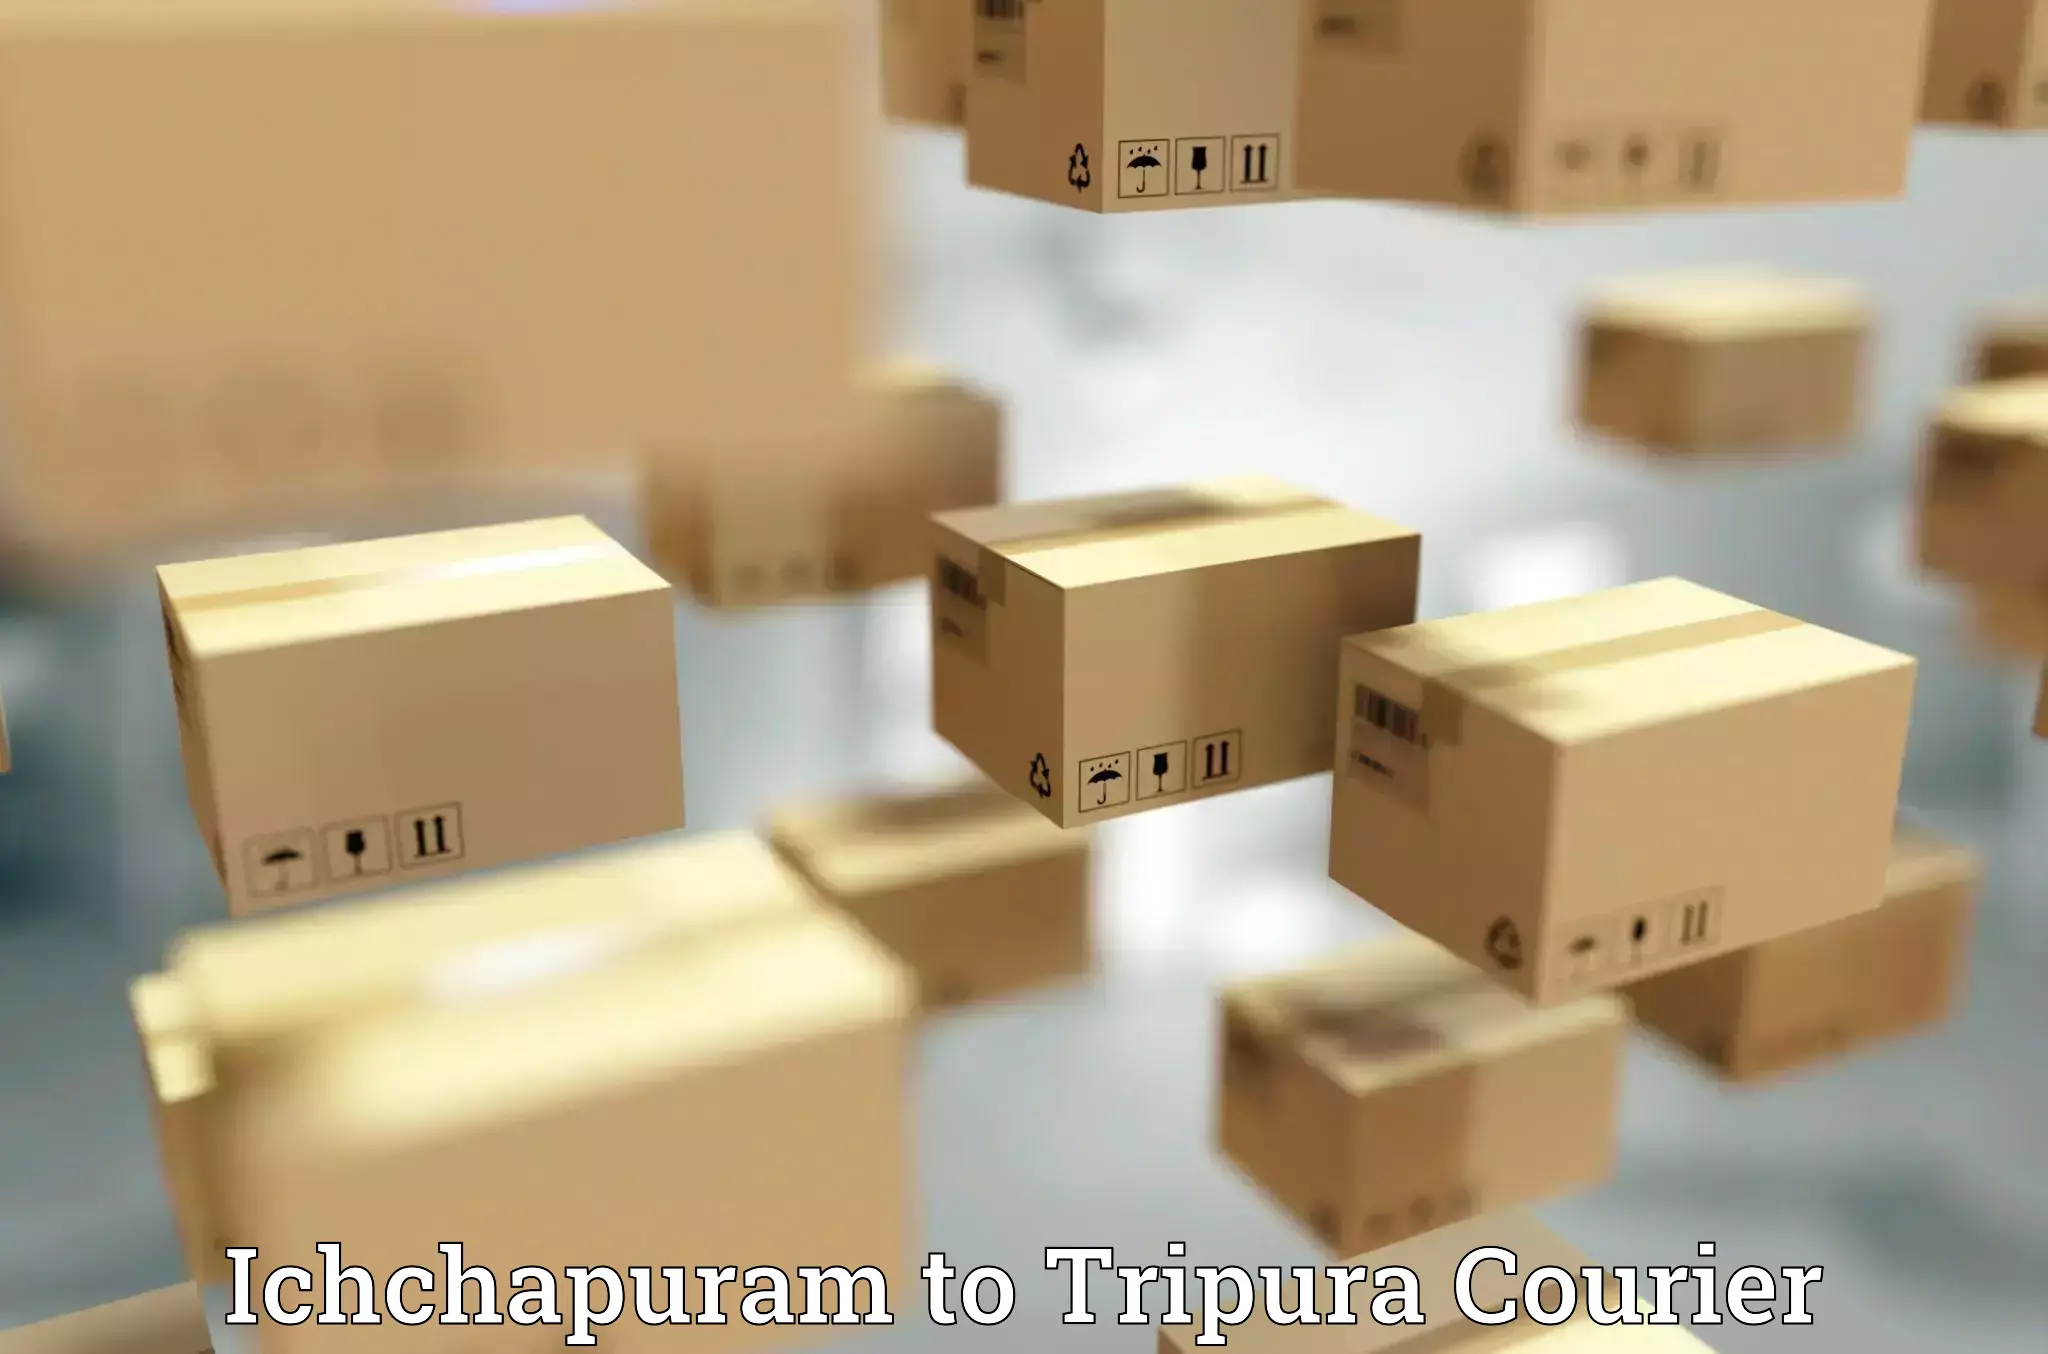 Quick dispatch service Ichchapuram to Tripura